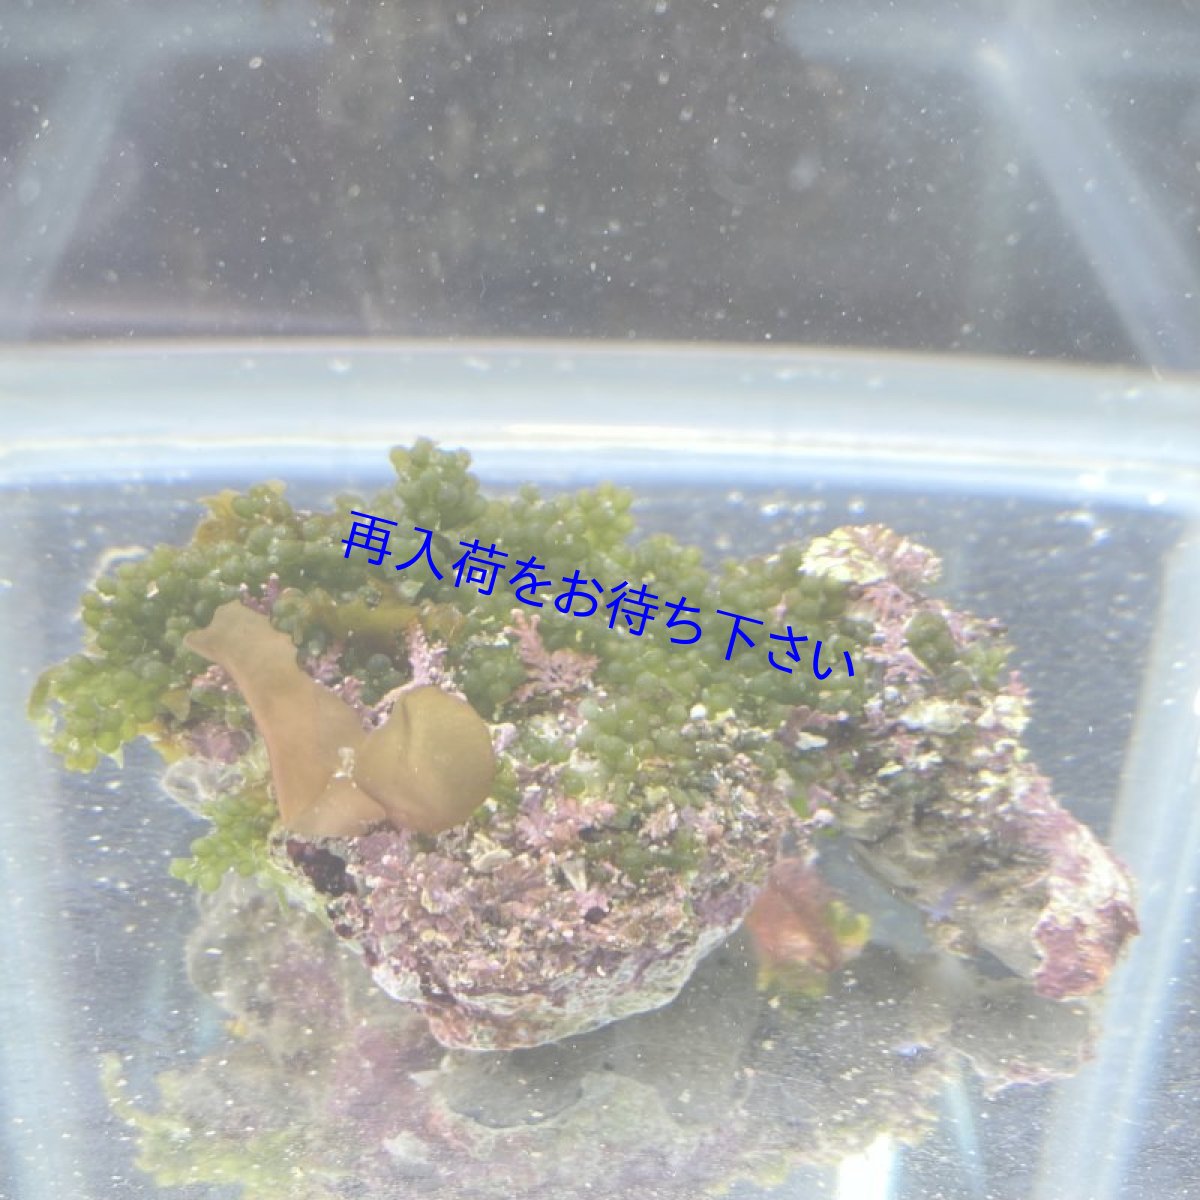 画像1: 【岩付き海藻】フサイワズタ (1)